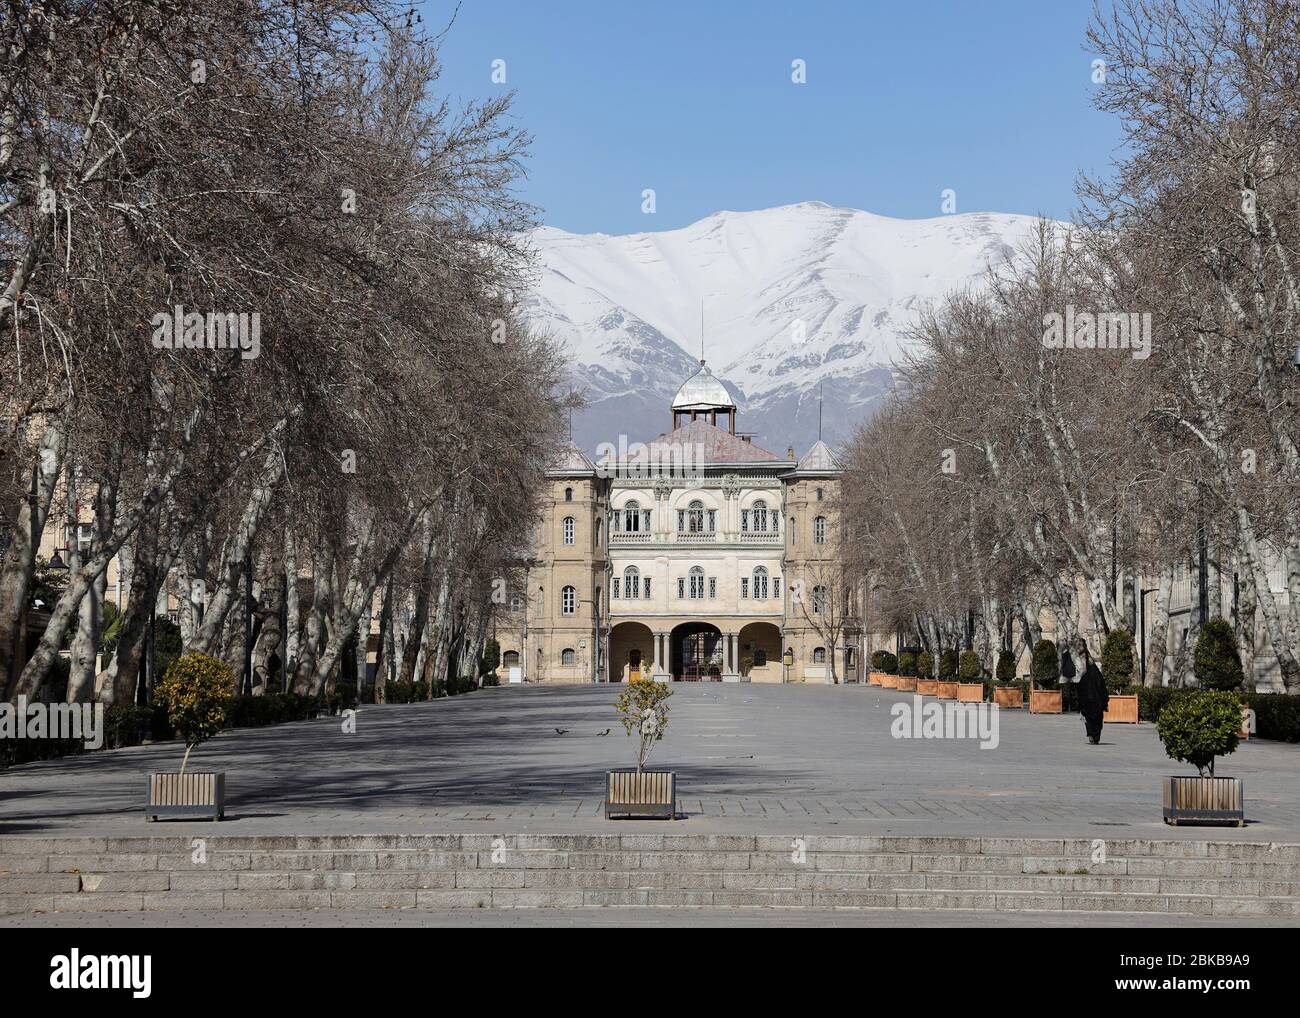 Bagh-e Melli (jardin national) avec l'Université d'Art de Téhéran au ralenti et le mont Alborz enneigé, Téhéran, Iran, Perse, Moyen-Orient. Banque D'Images